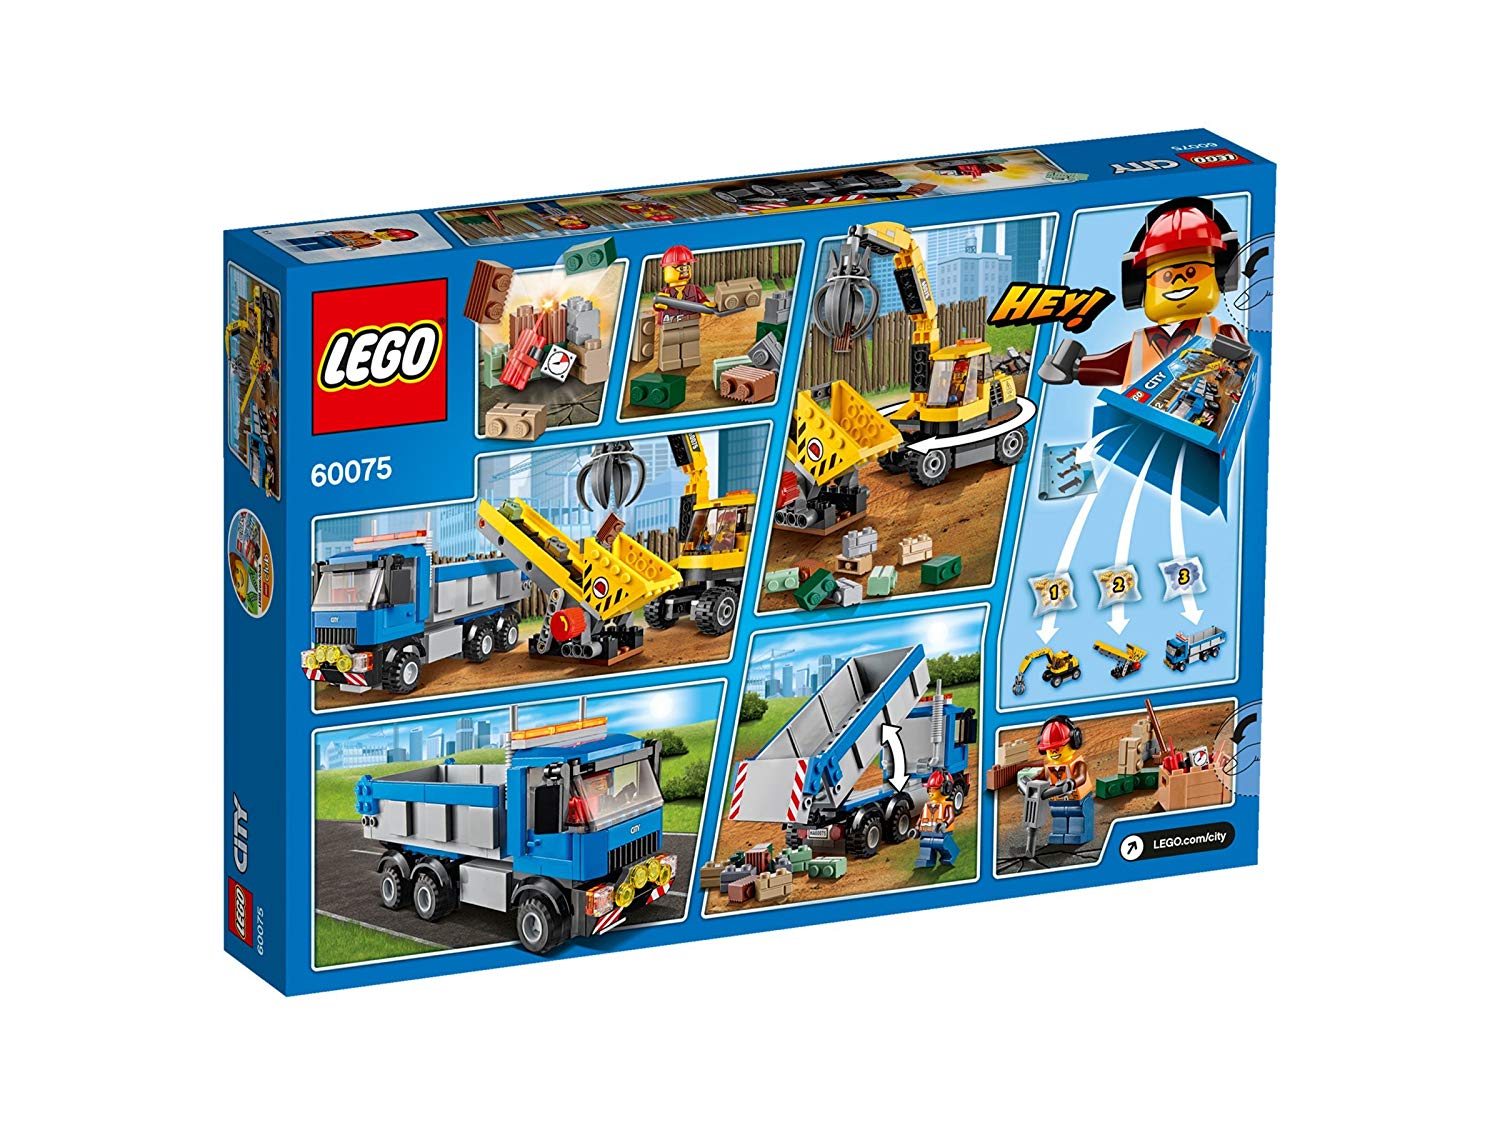 Lego City 60075: Excavator And Truck